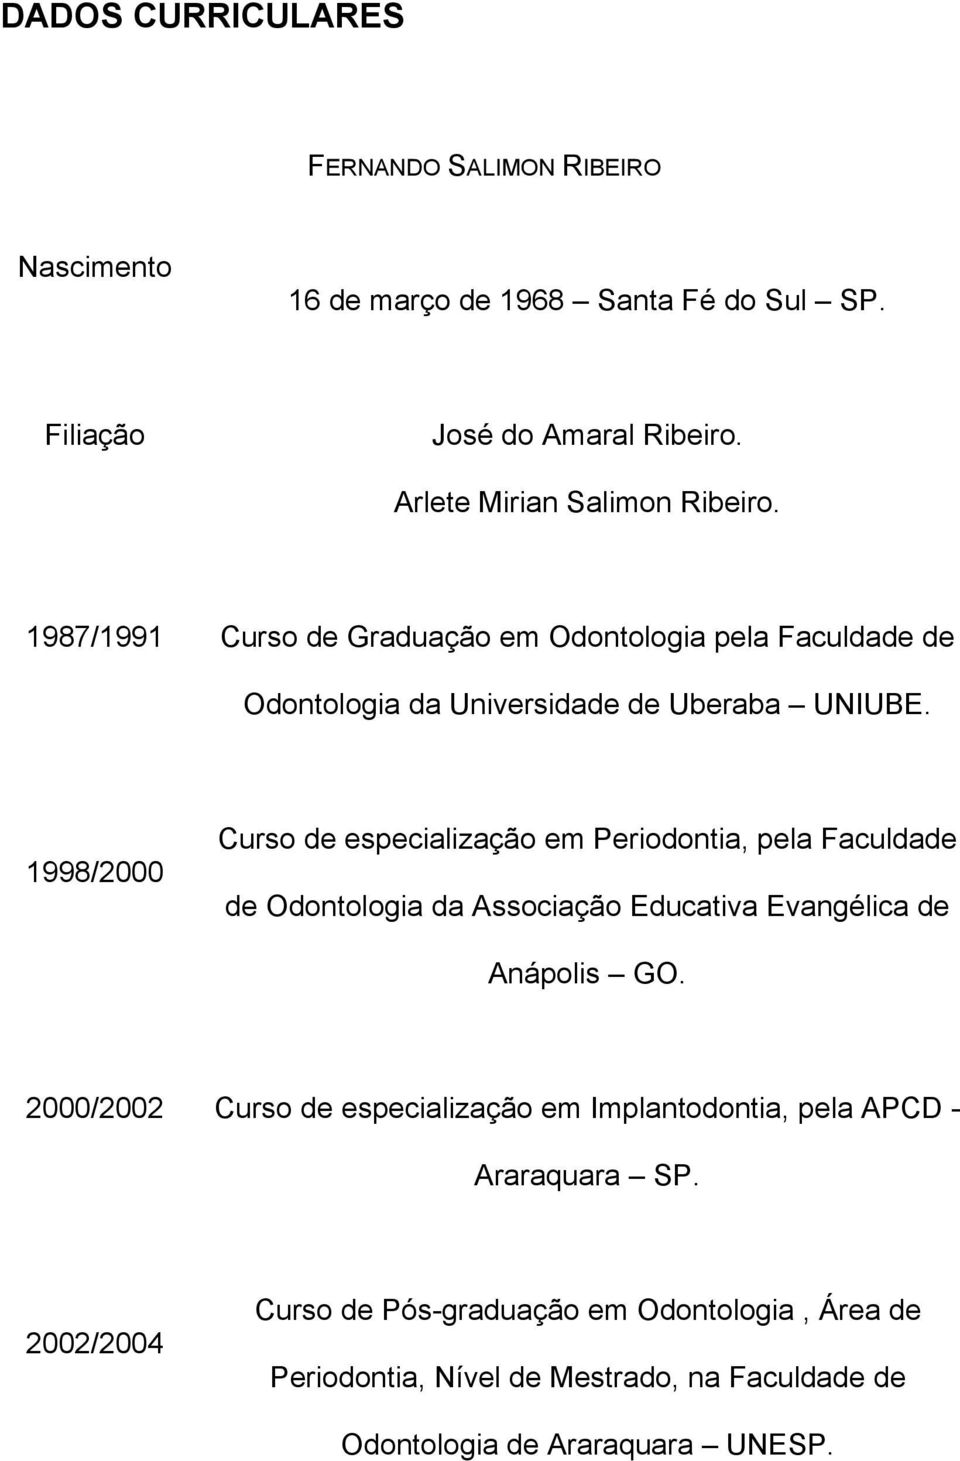 1998/2000 Curso de especialização em Periodontia, pela Faculdade de Odontologia da Associação Educativa Evangélica de Anápolis GO.